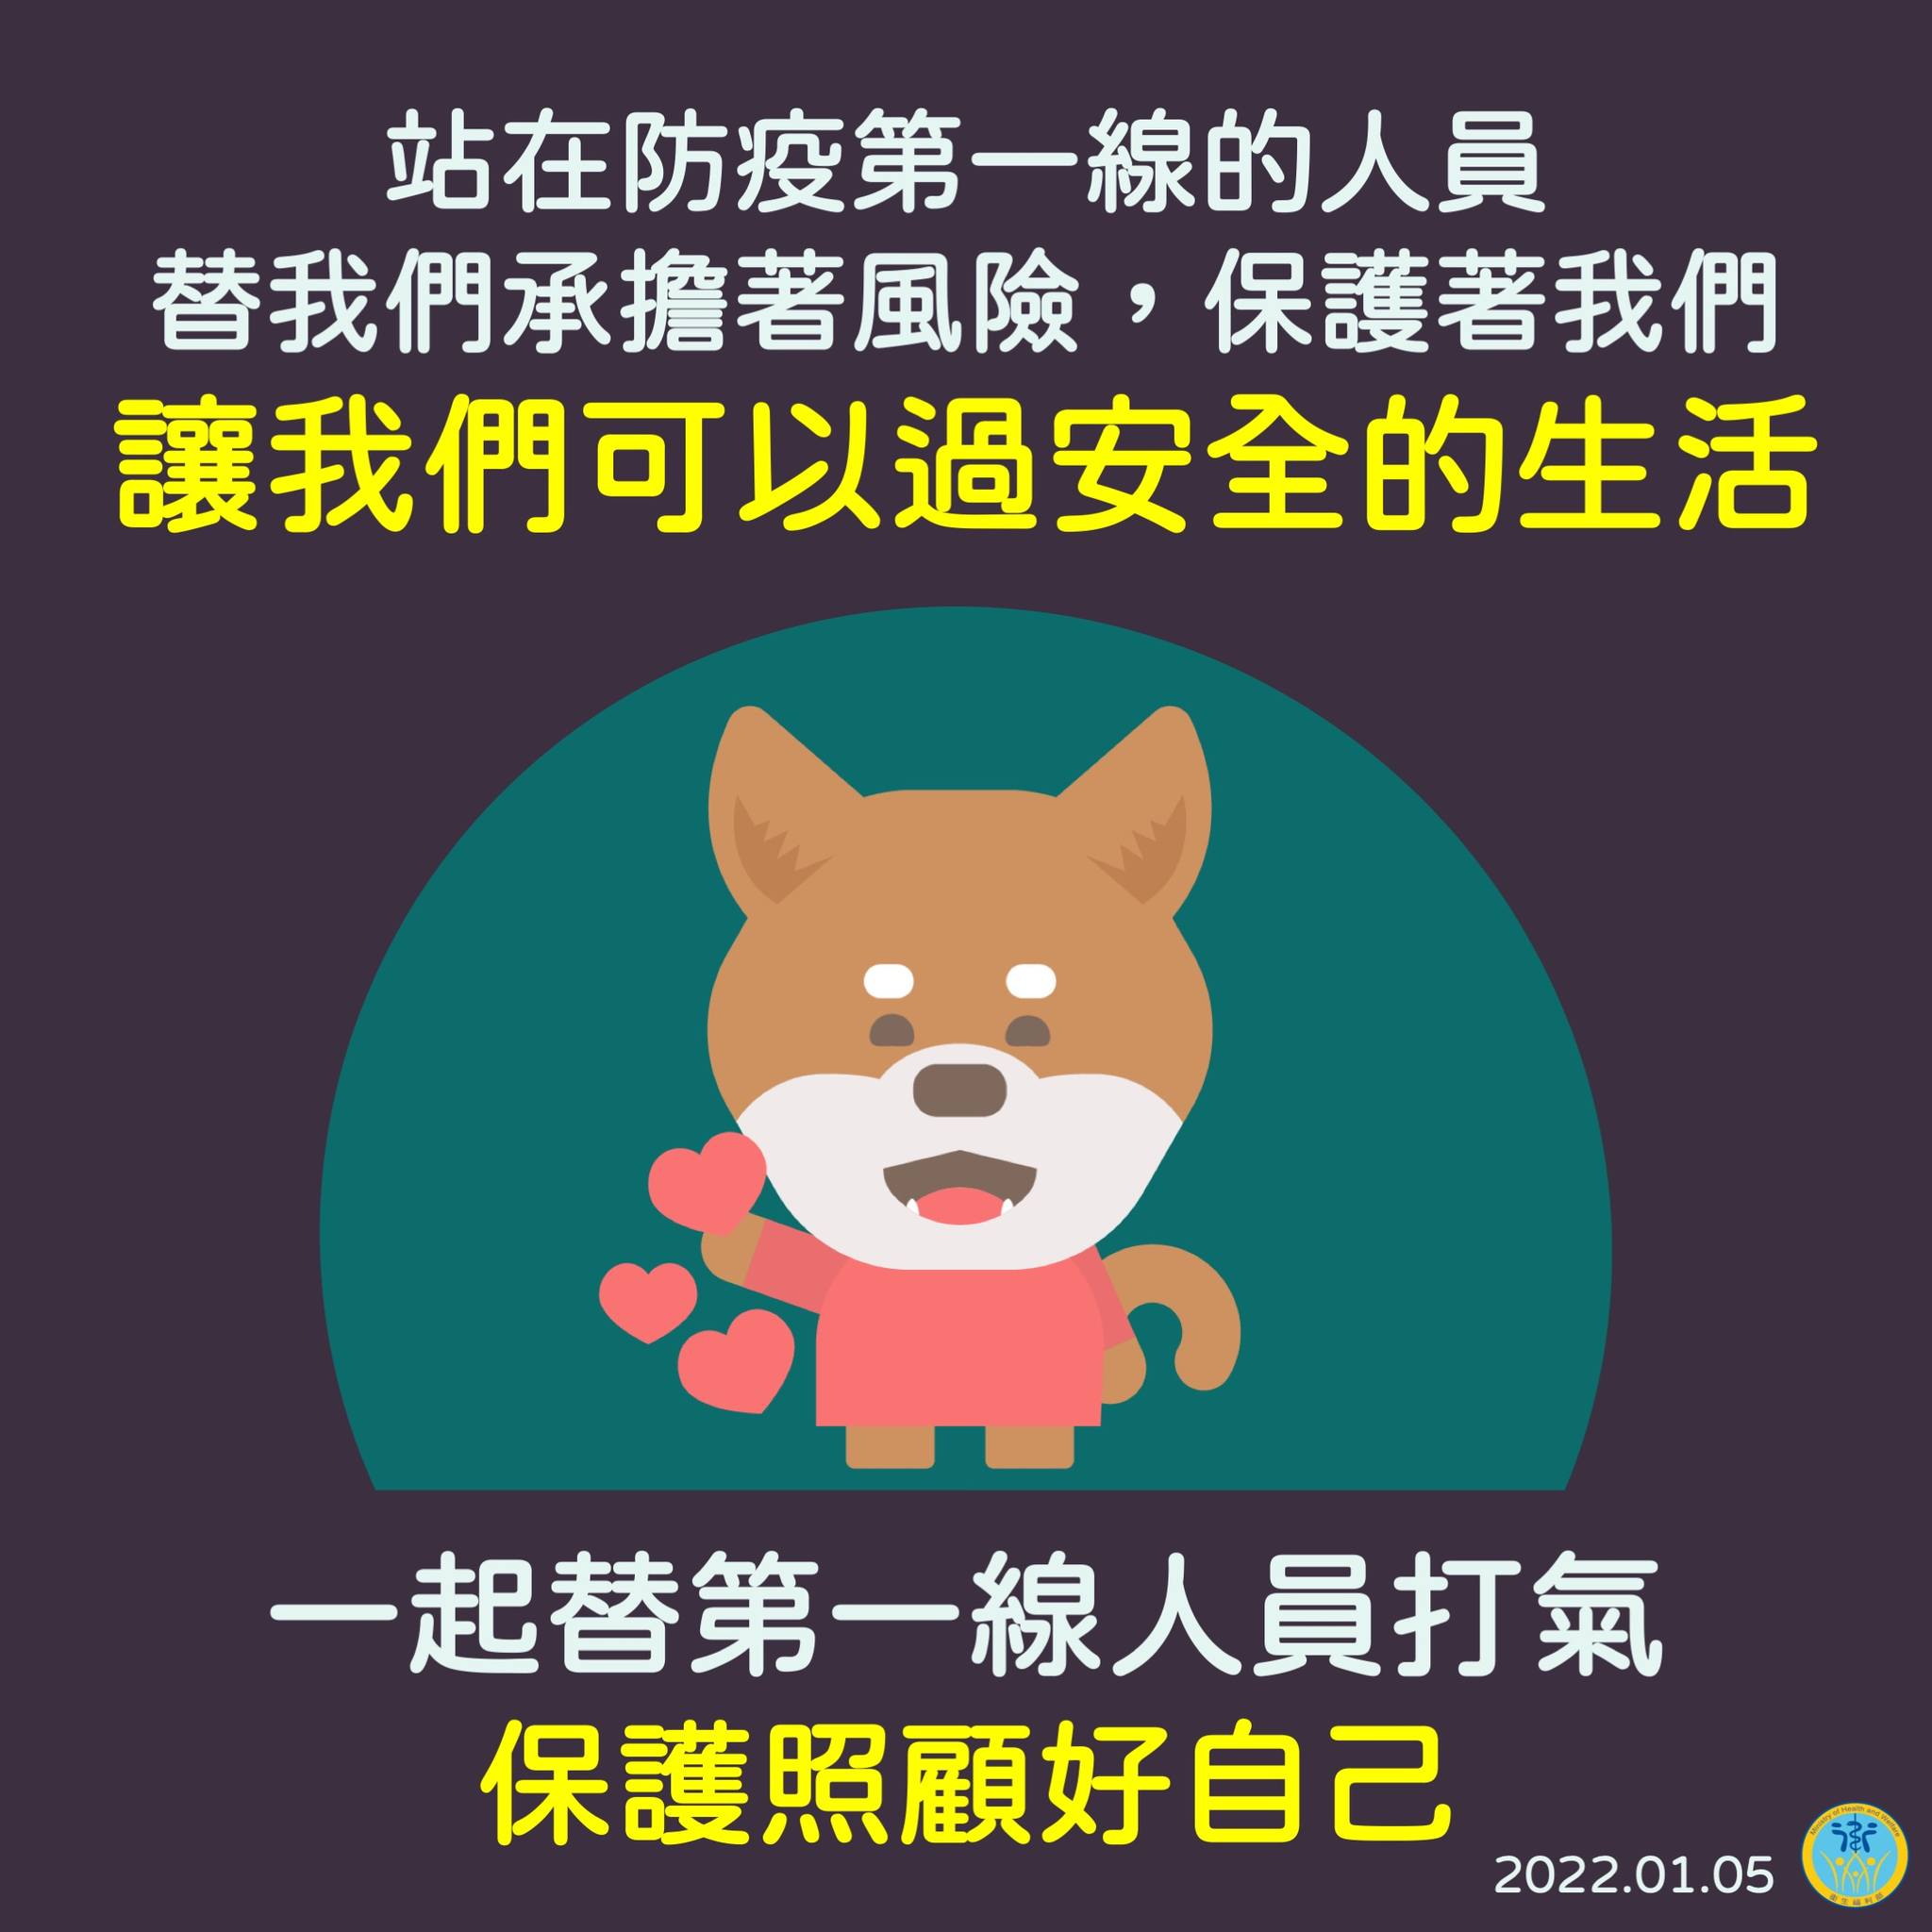 武漢肺炎之台灣疫情資訊∥ 2022年1~3月 查詢新型冠狀病毒確診人數、每日新增人數、分布縣市、疫情統計